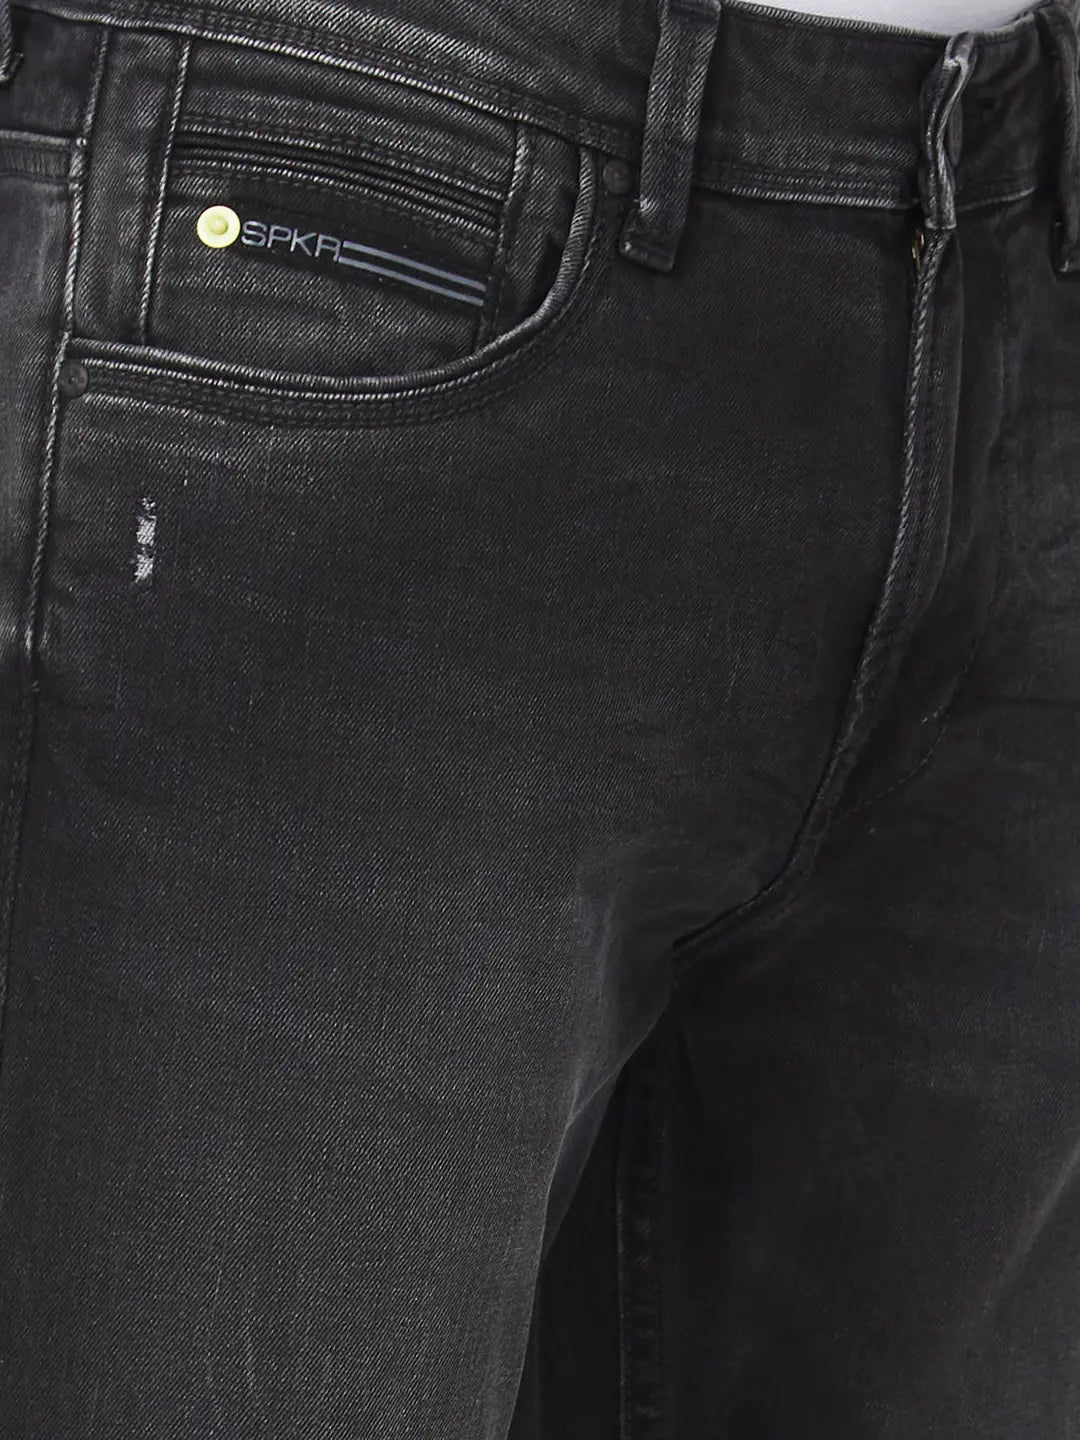 Spykar Men Carbon Black Cotton Comfort Fit Regular Length Knee Slit Mid Rise Jeans (Rafter)